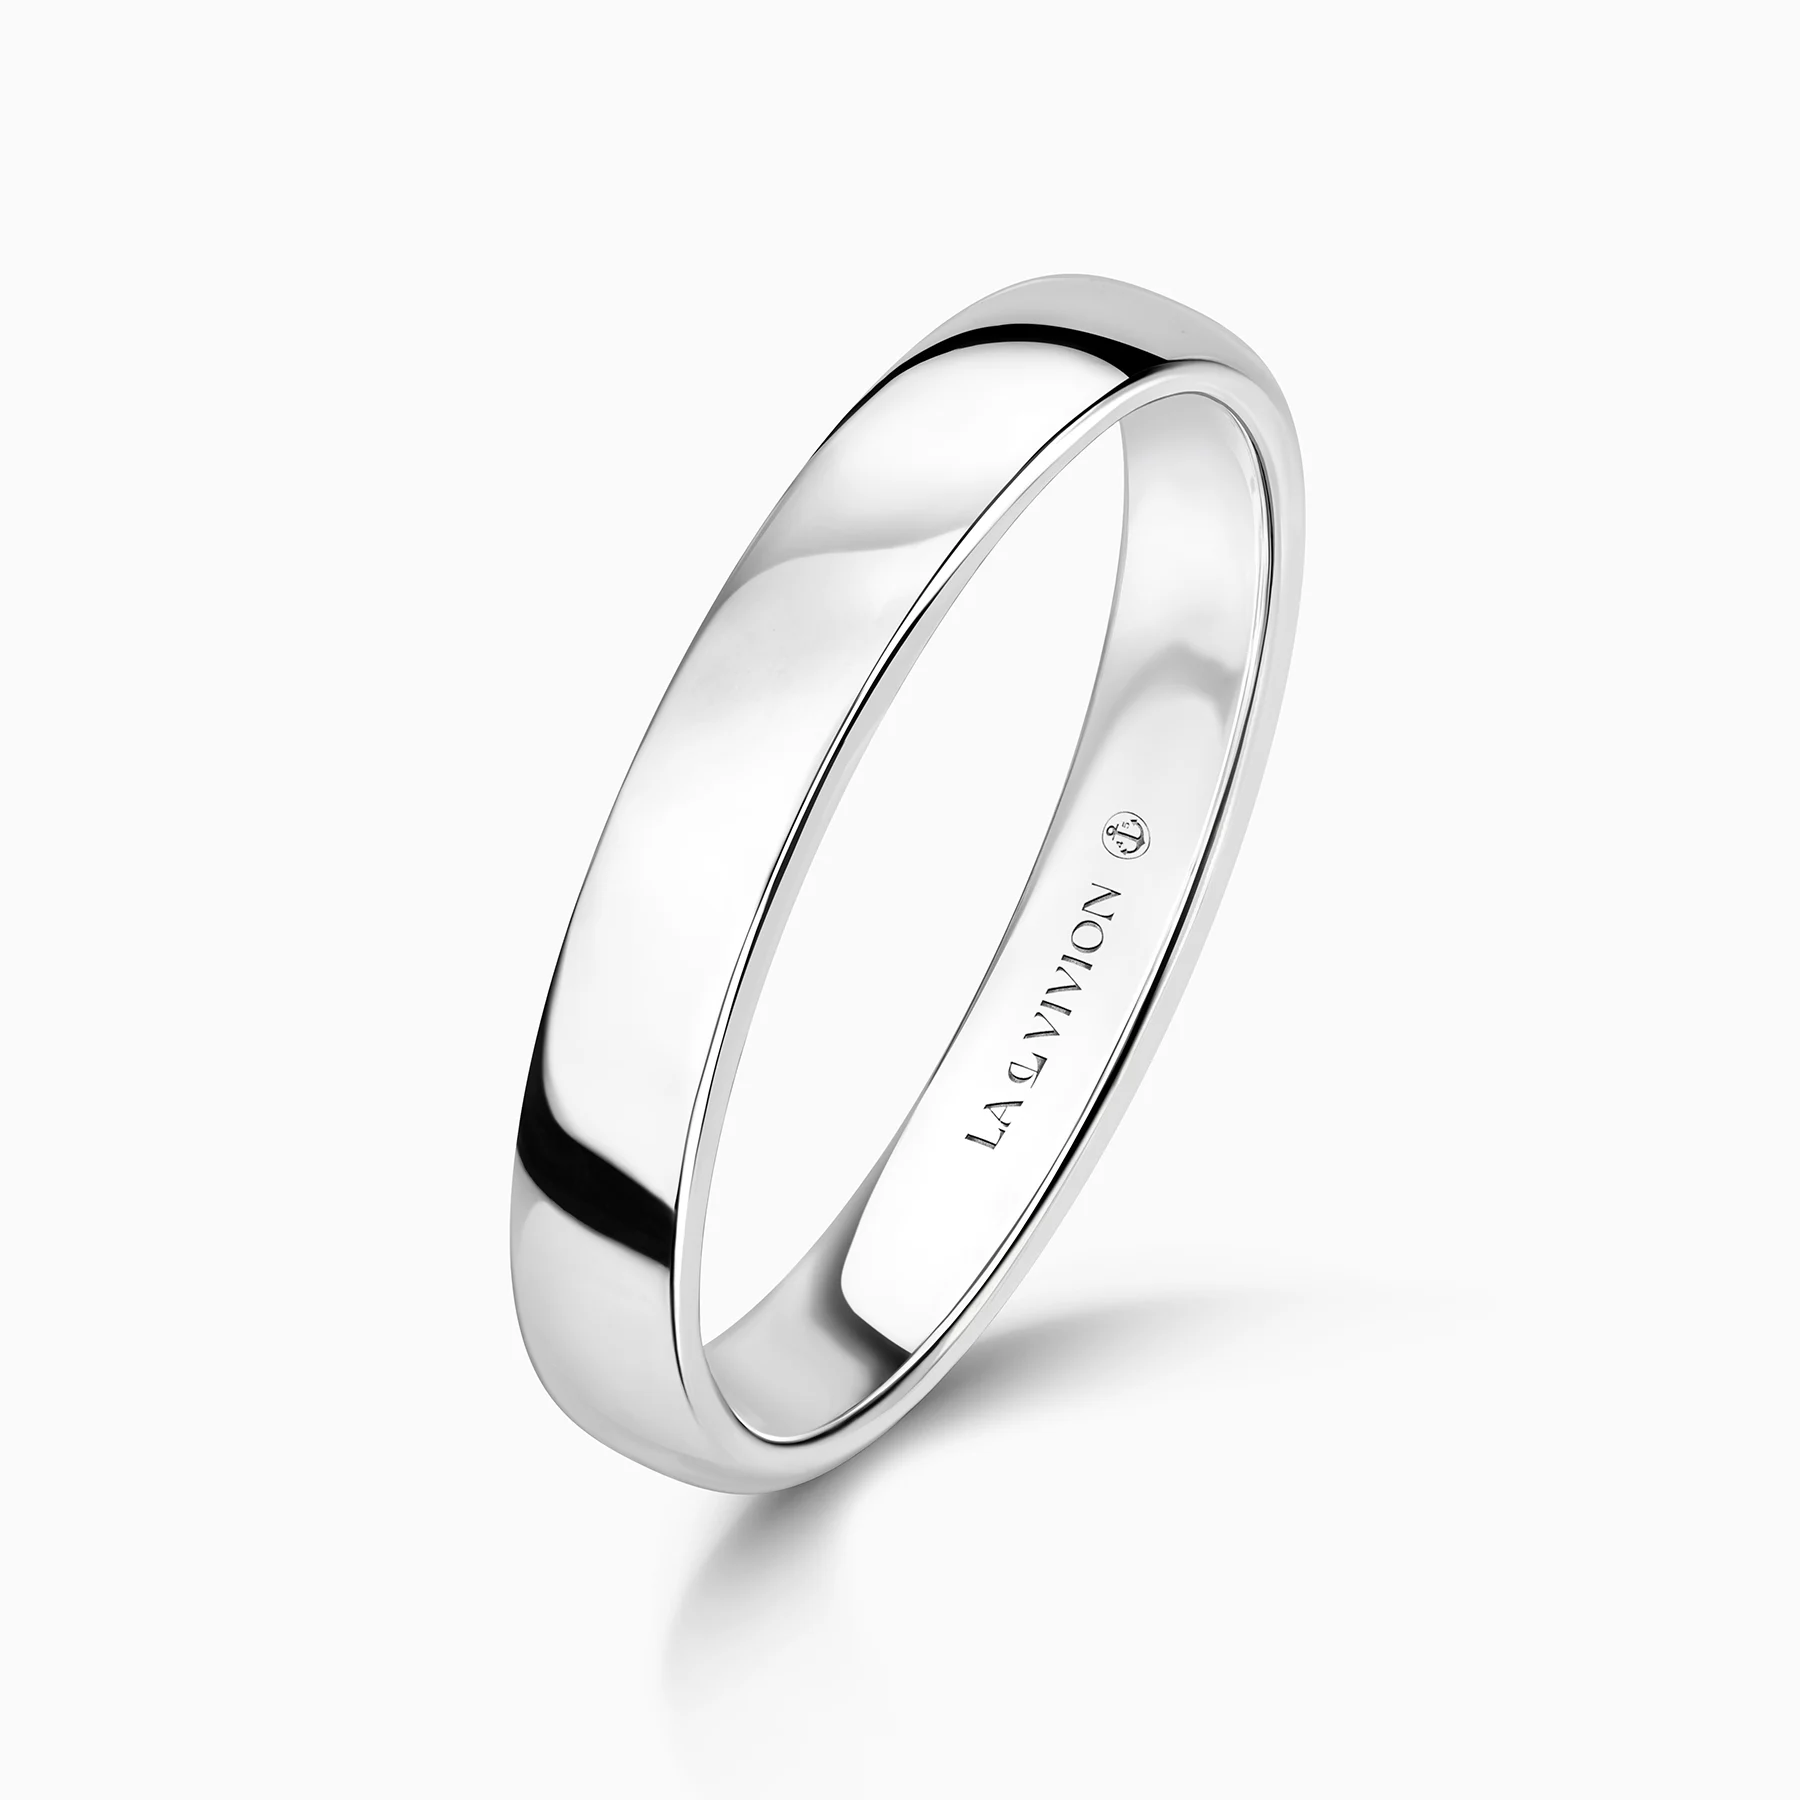 Обручальное кольцо Le Avenir 3.5 мм (Будущее)